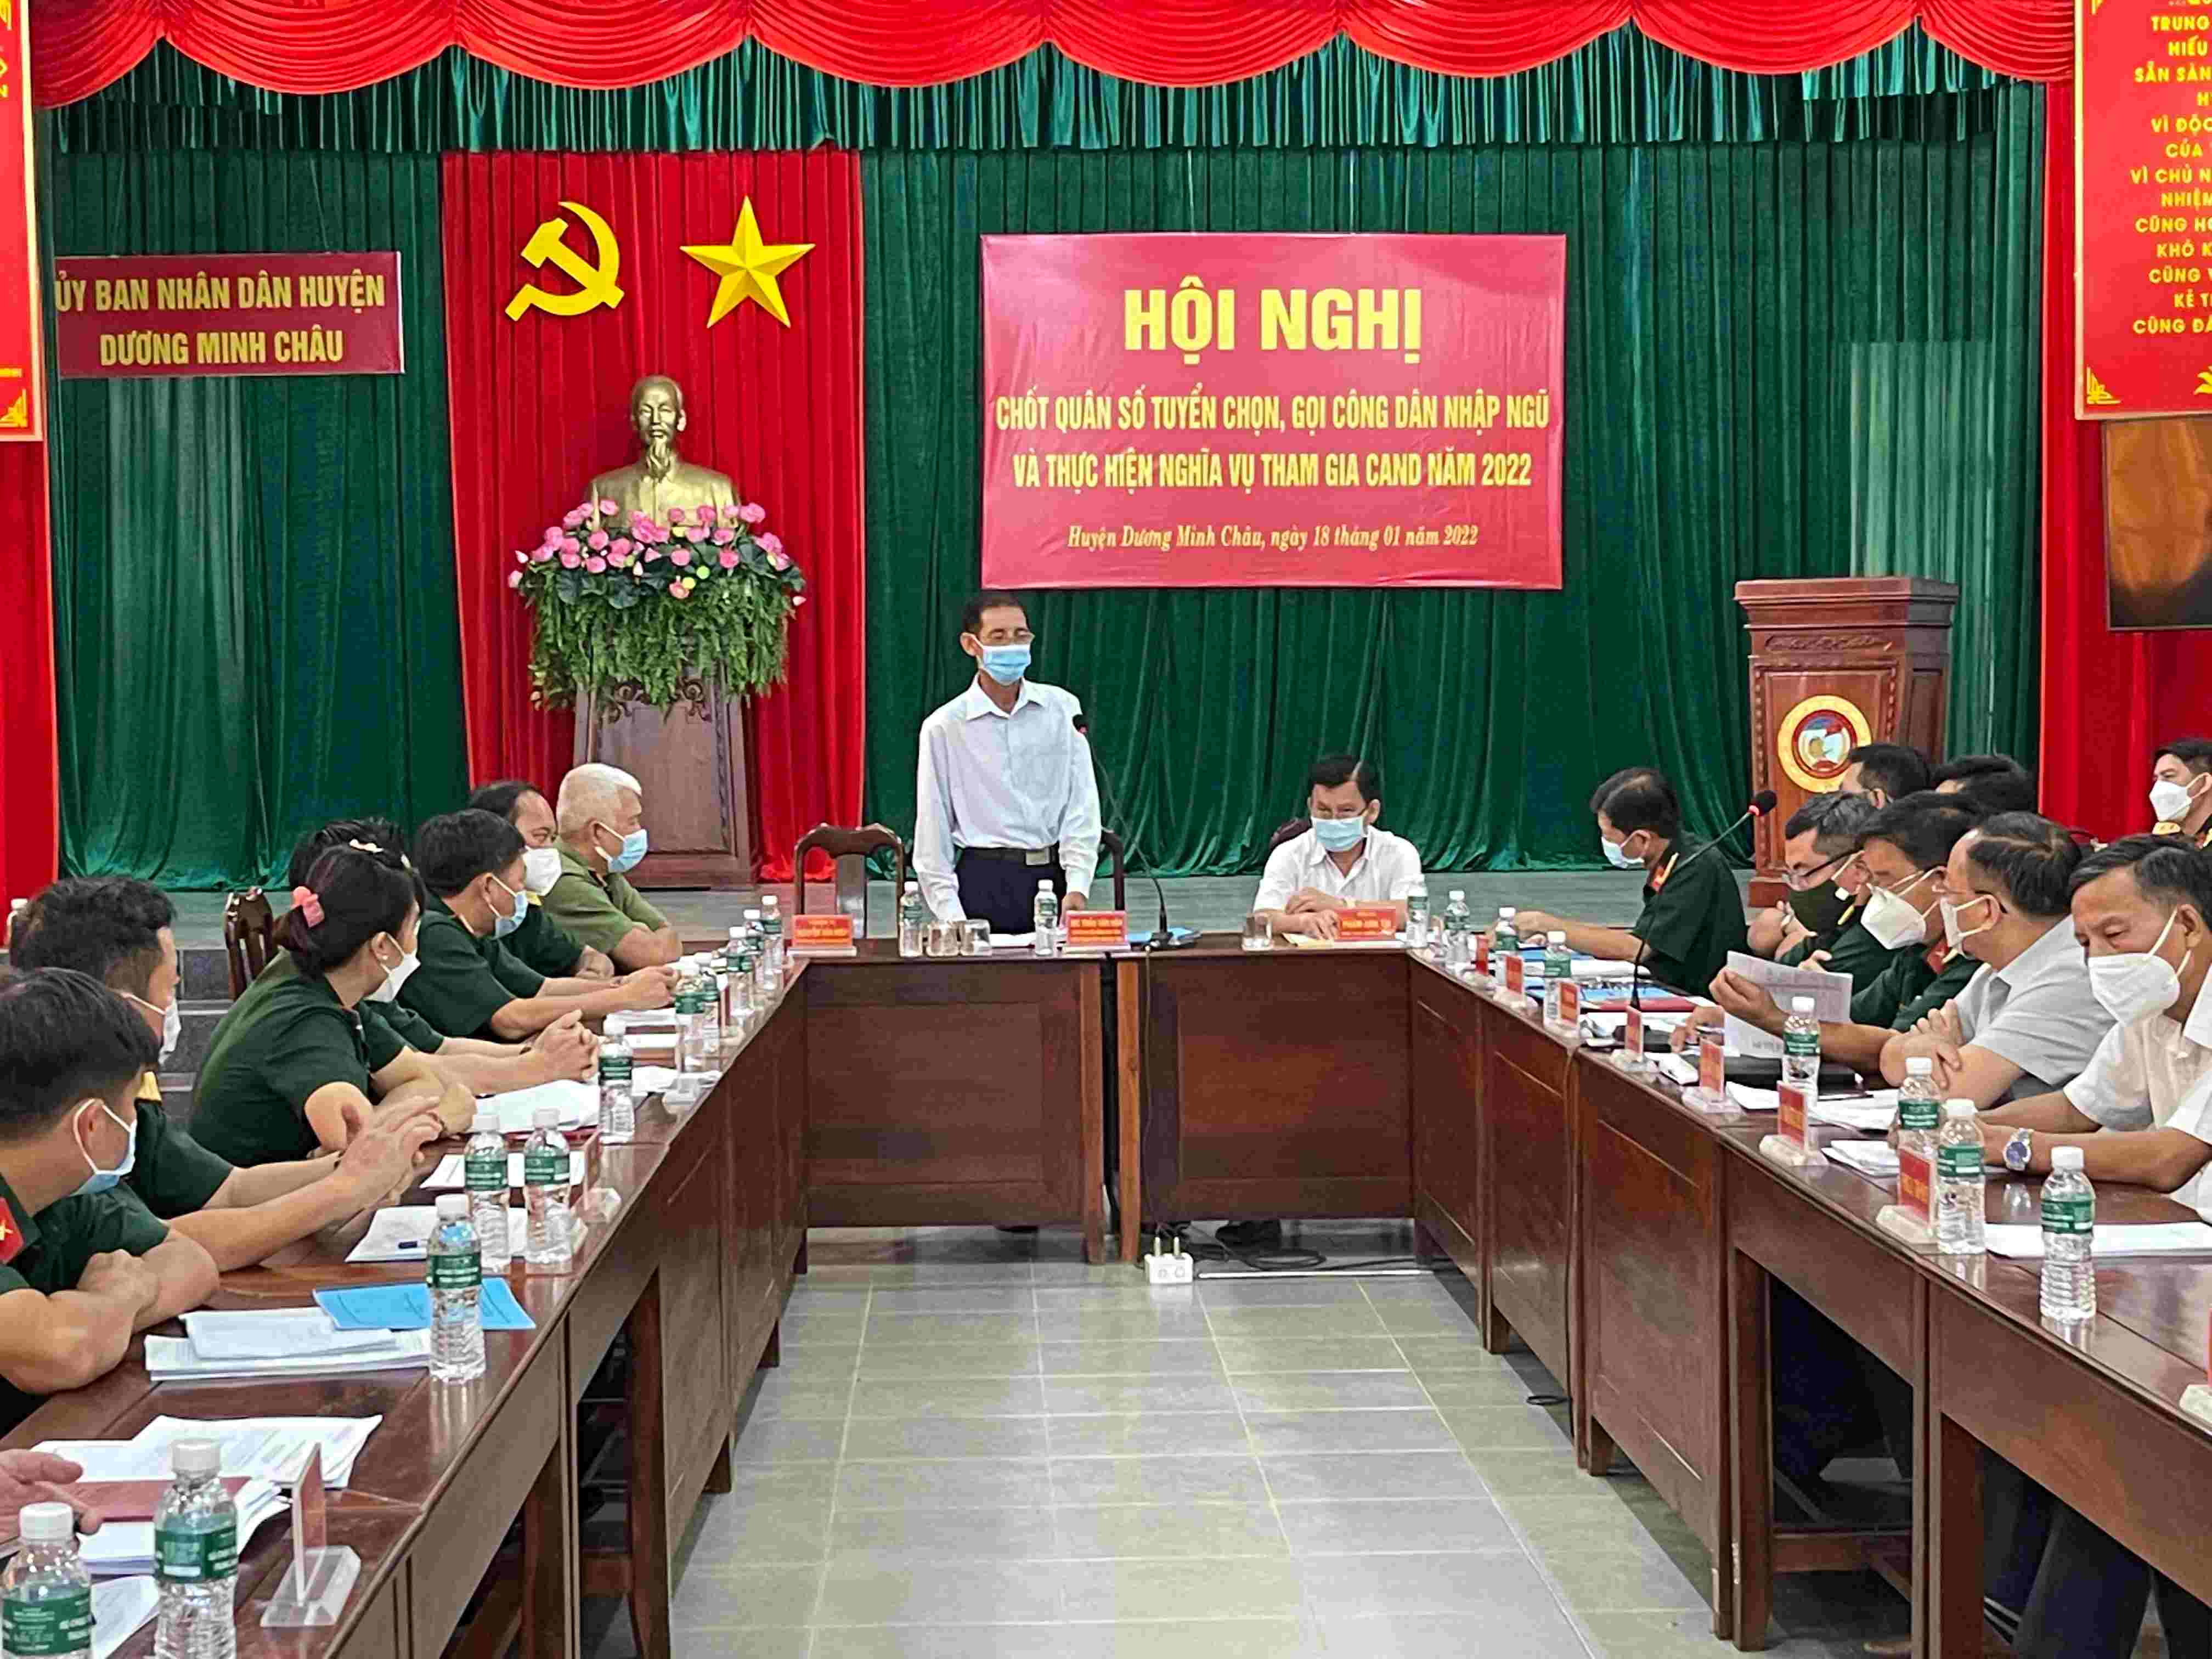 Huyện Dương Minh Châu:  Chốt Quân số tuyển chọn, gọi Công dân nhập ngũ và thực hiện nghĩa vụ tham gia Công an năm 2022